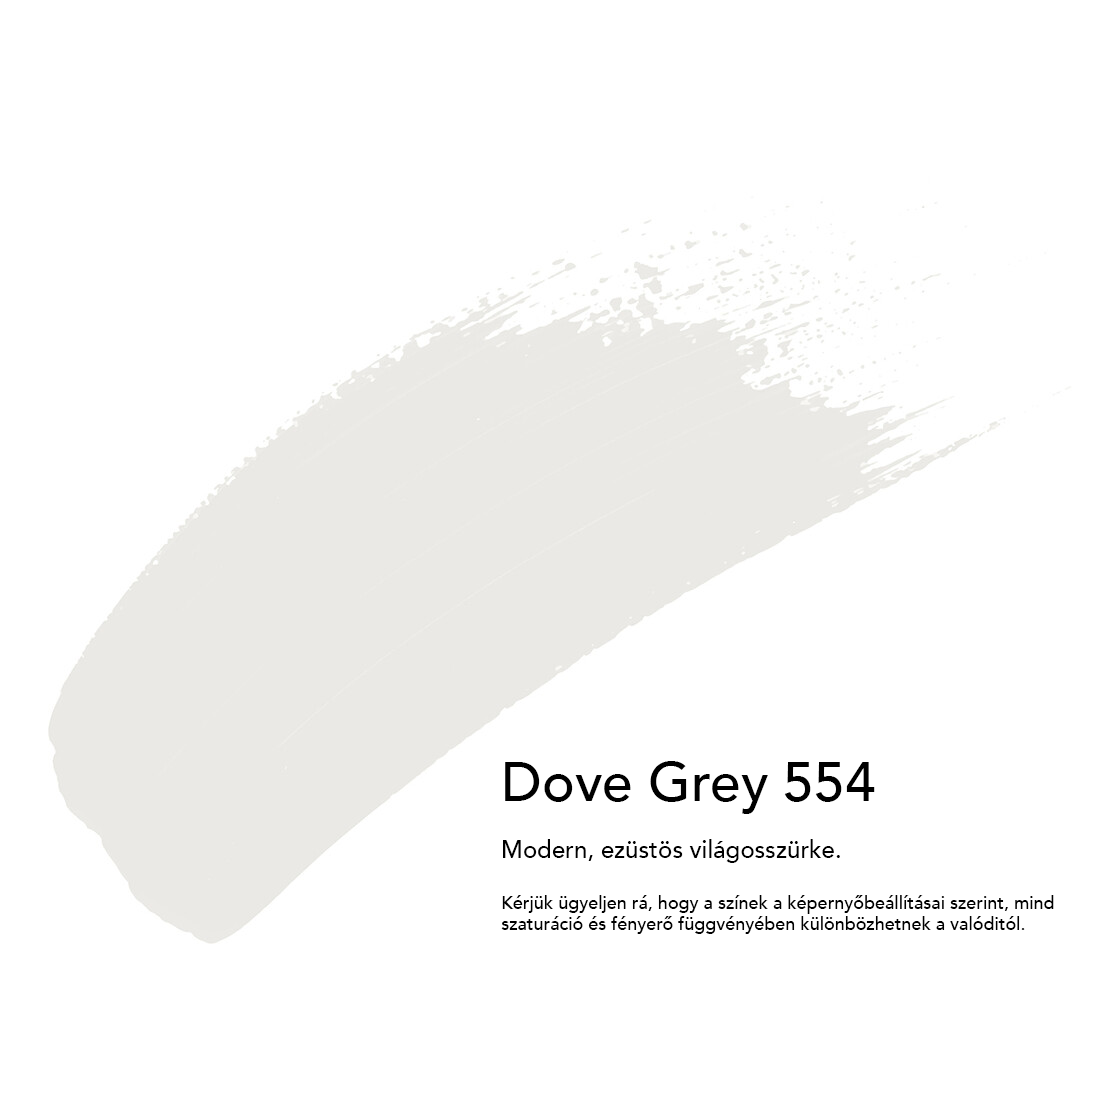 Dove-grey